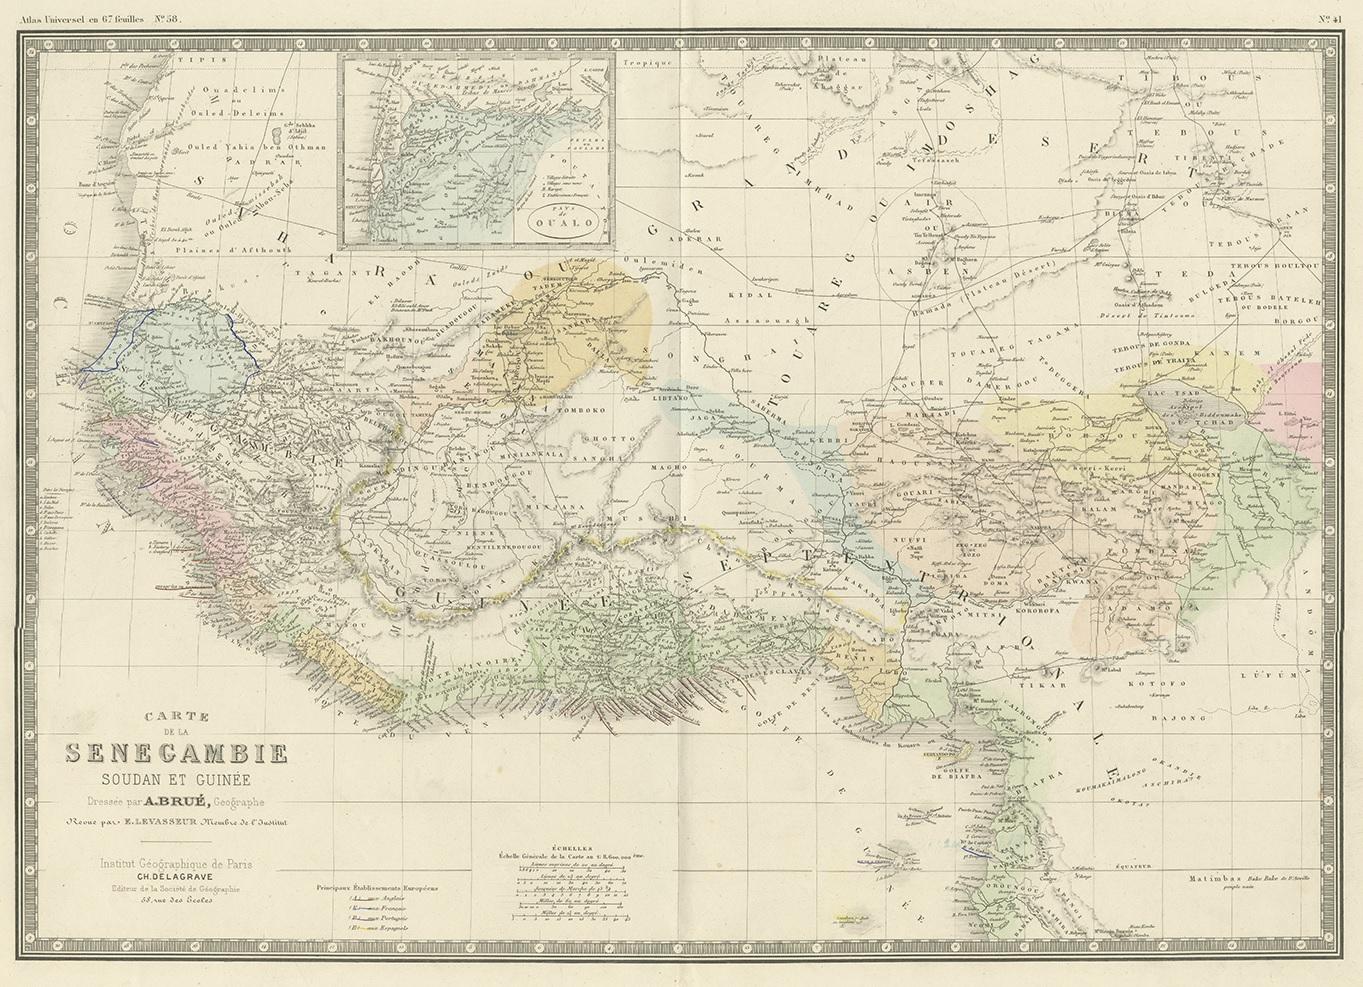 Antique map titled 'Carte de la Senegambie Soudan et Guinée'. Large map of Western Africa. This map originates from 'Atlas de Géographie Moderne Physique et Politique' by A. Levasseur. Published 1875.